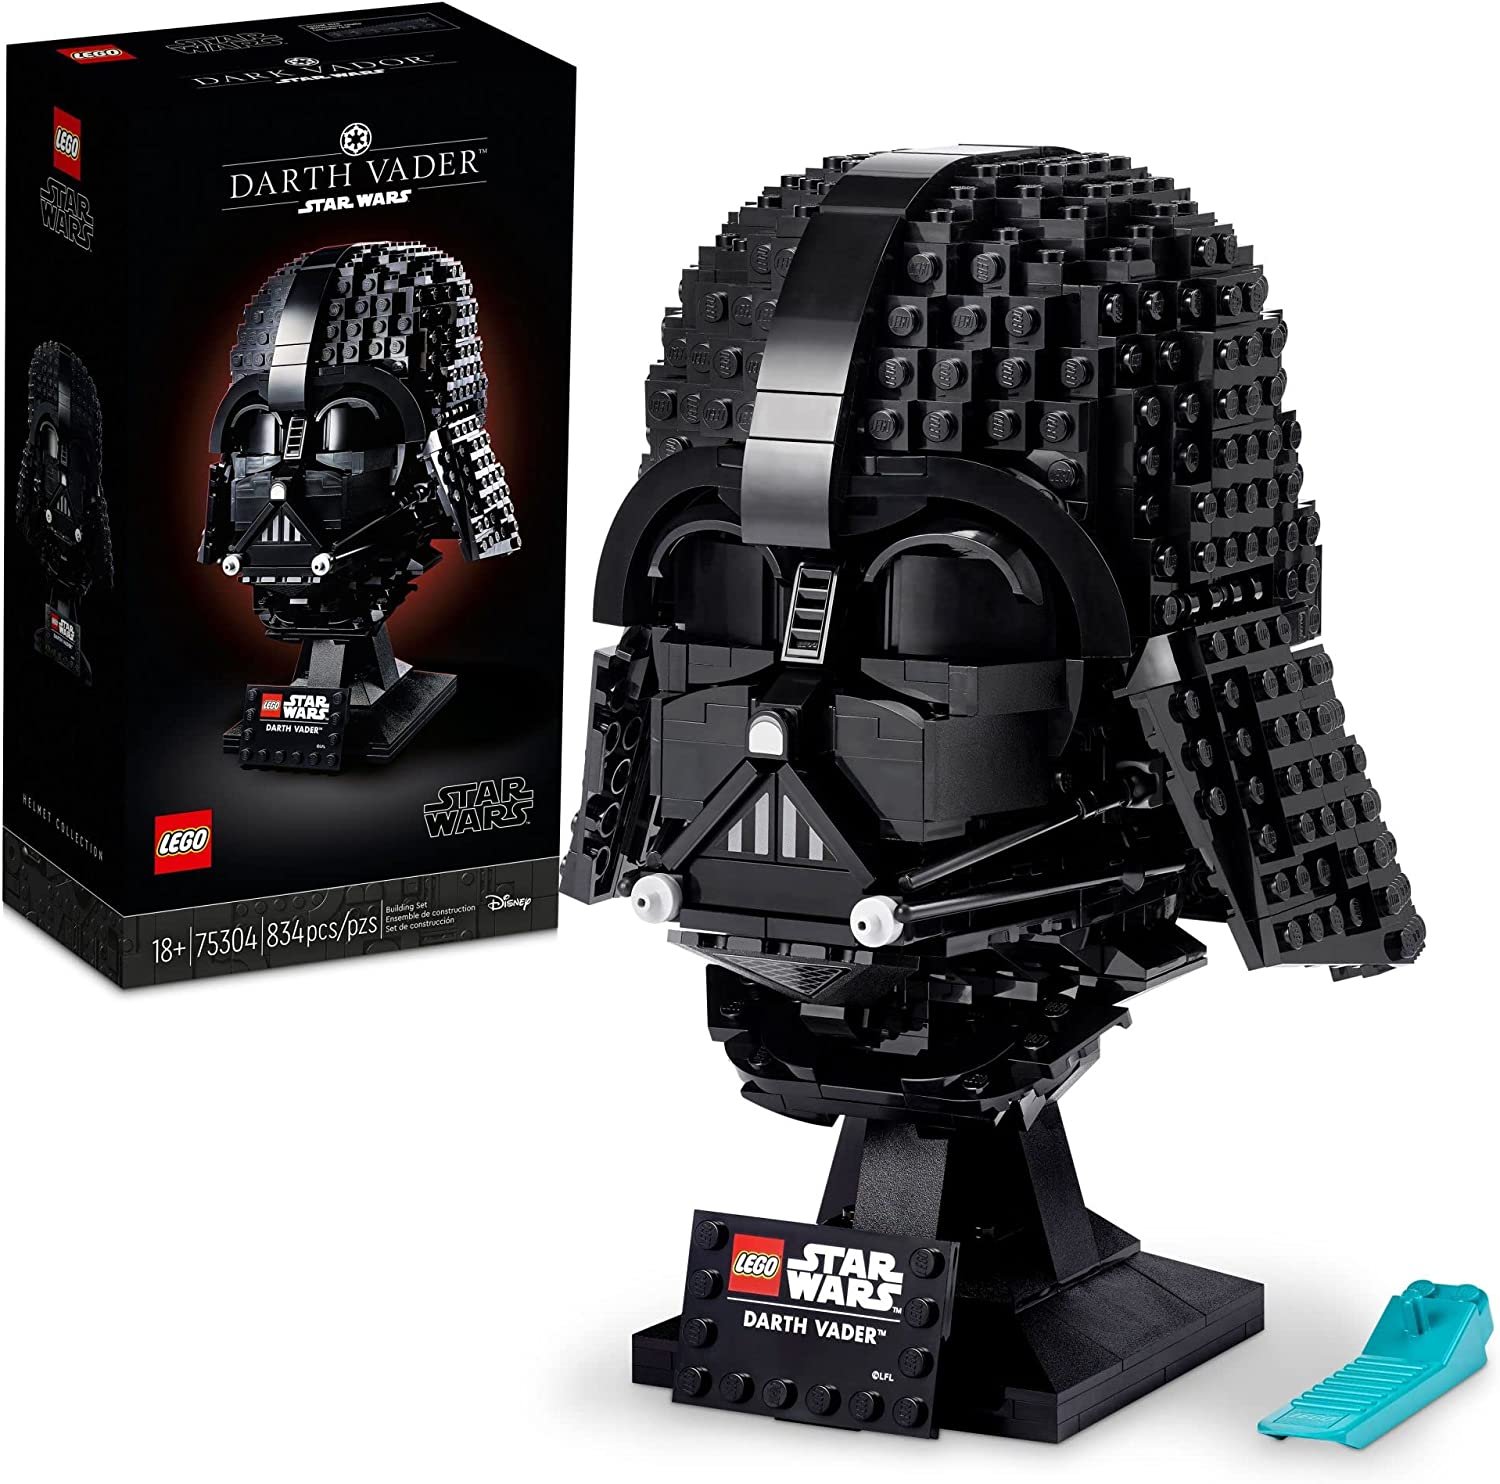 LEGO Star Wars Darth Vader Helmet 75304 Set